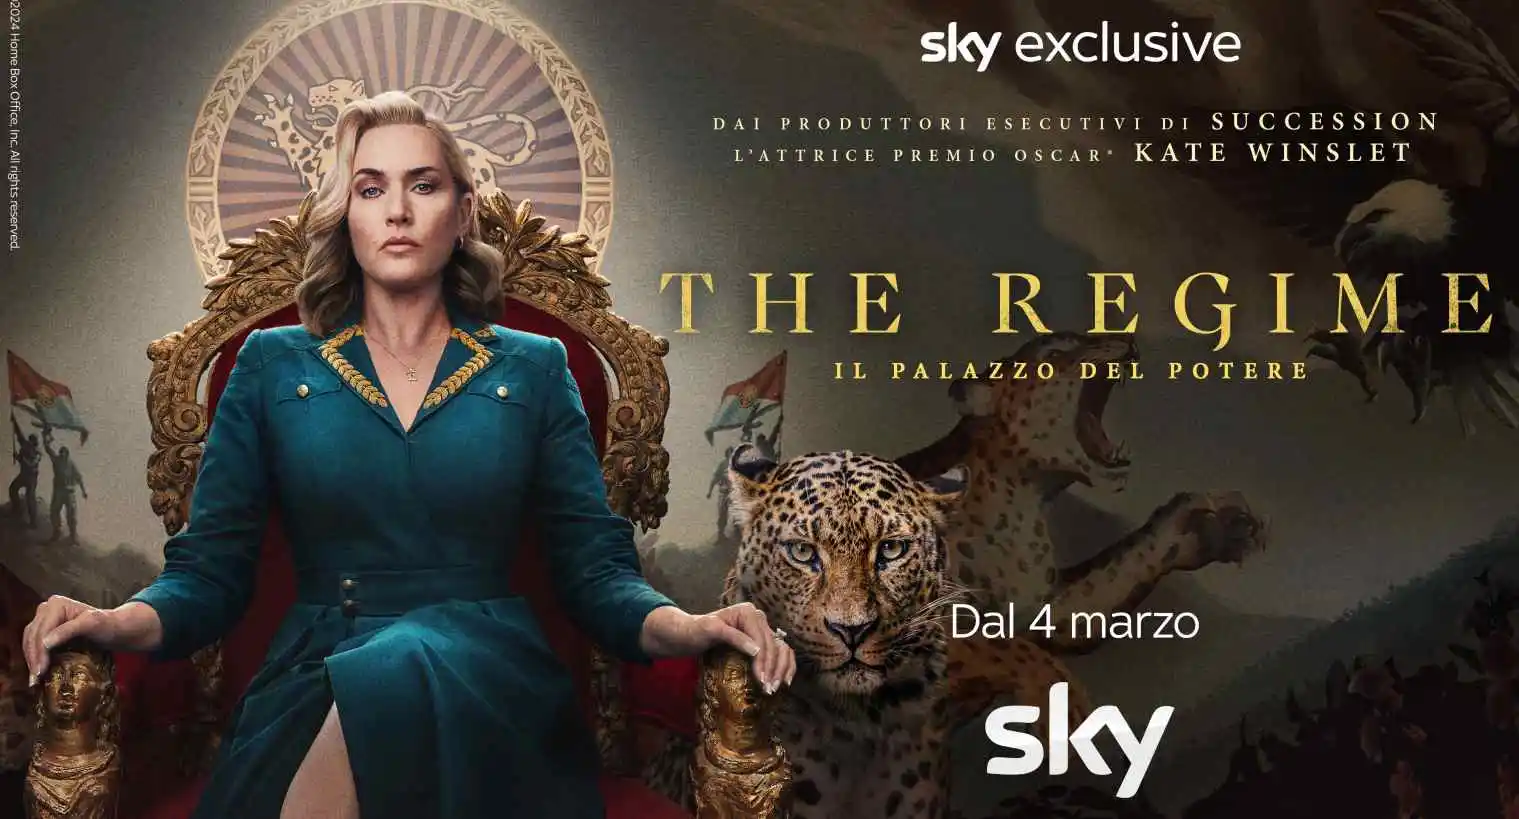 Foto - The Regime, Il Palazzo del Potere - Nuova Miniserie con Kate Winslet in Esclusiva Sky e NOW